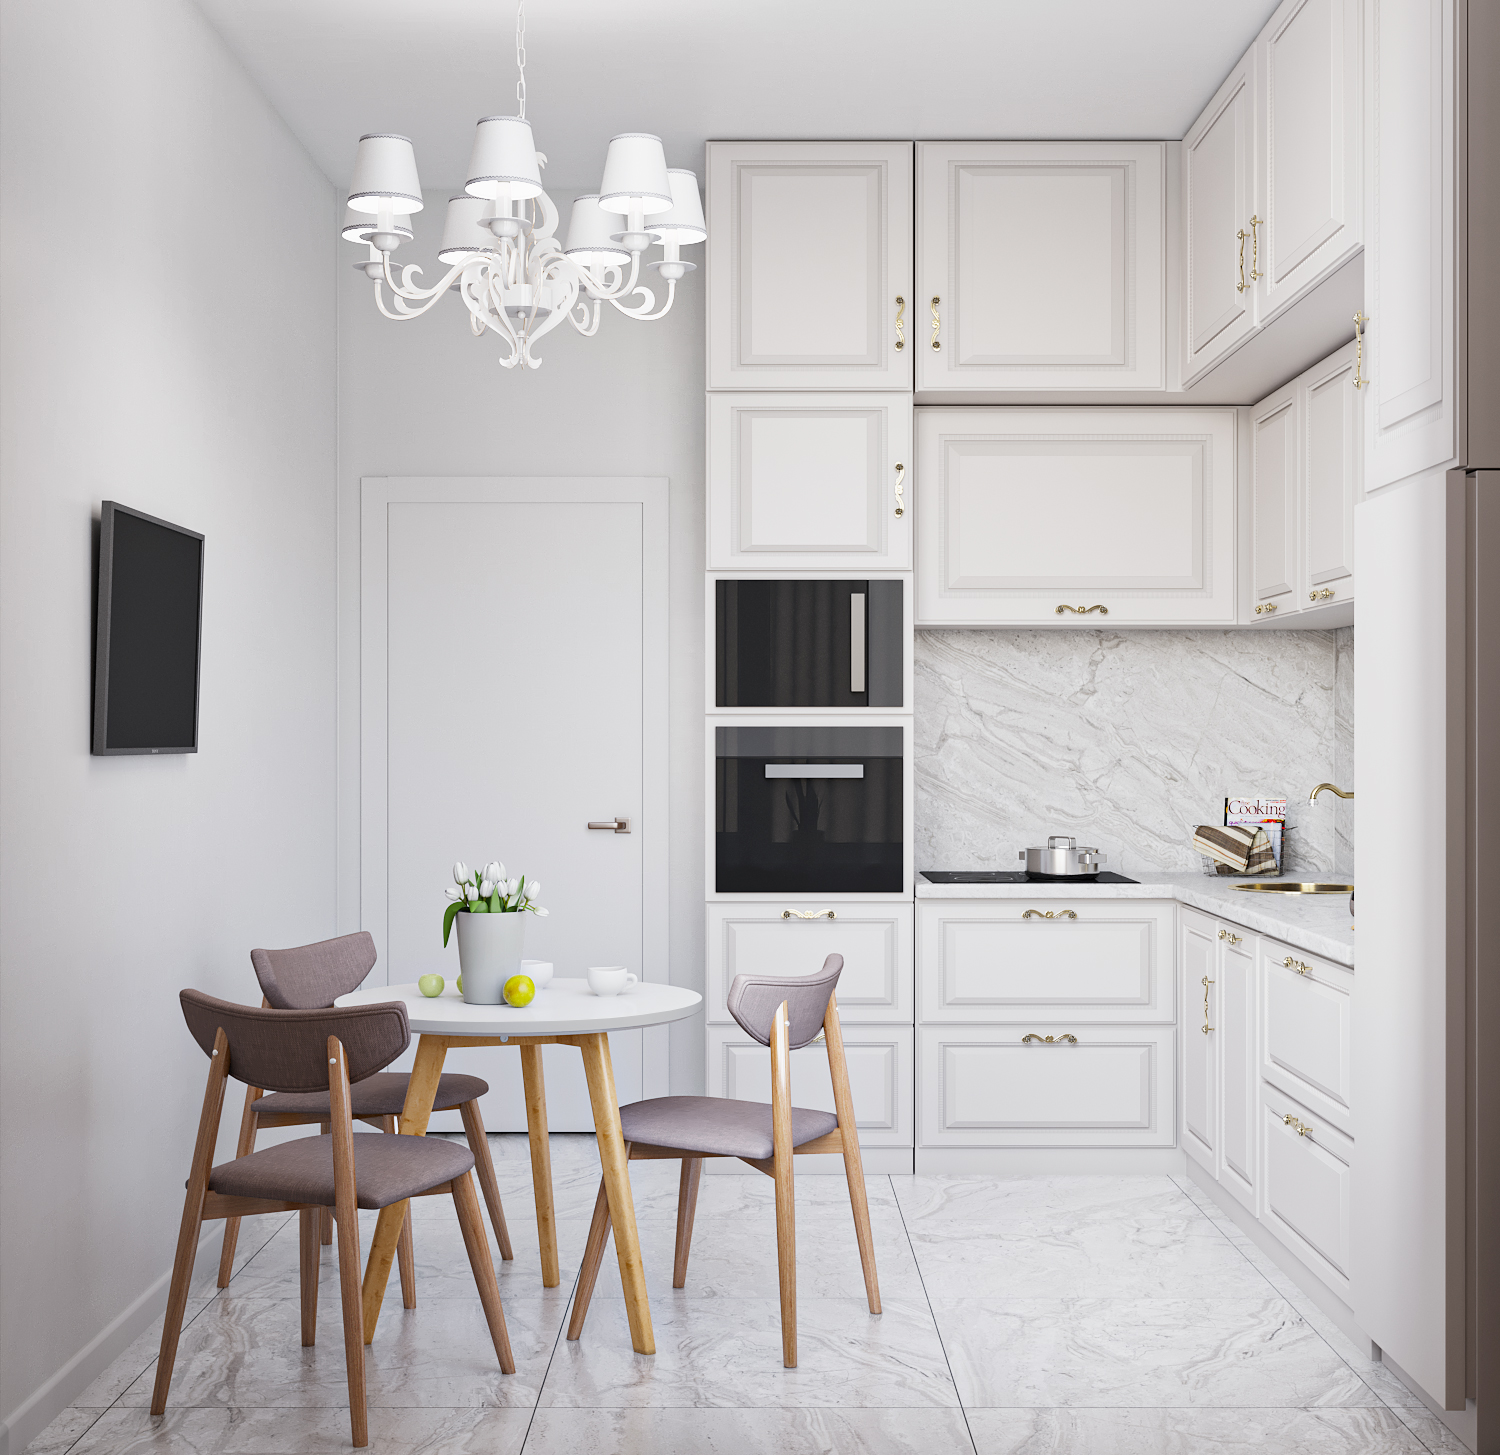 Фото № 4: Кухня в белых цветах: идеи оформления и советы от ReRooms